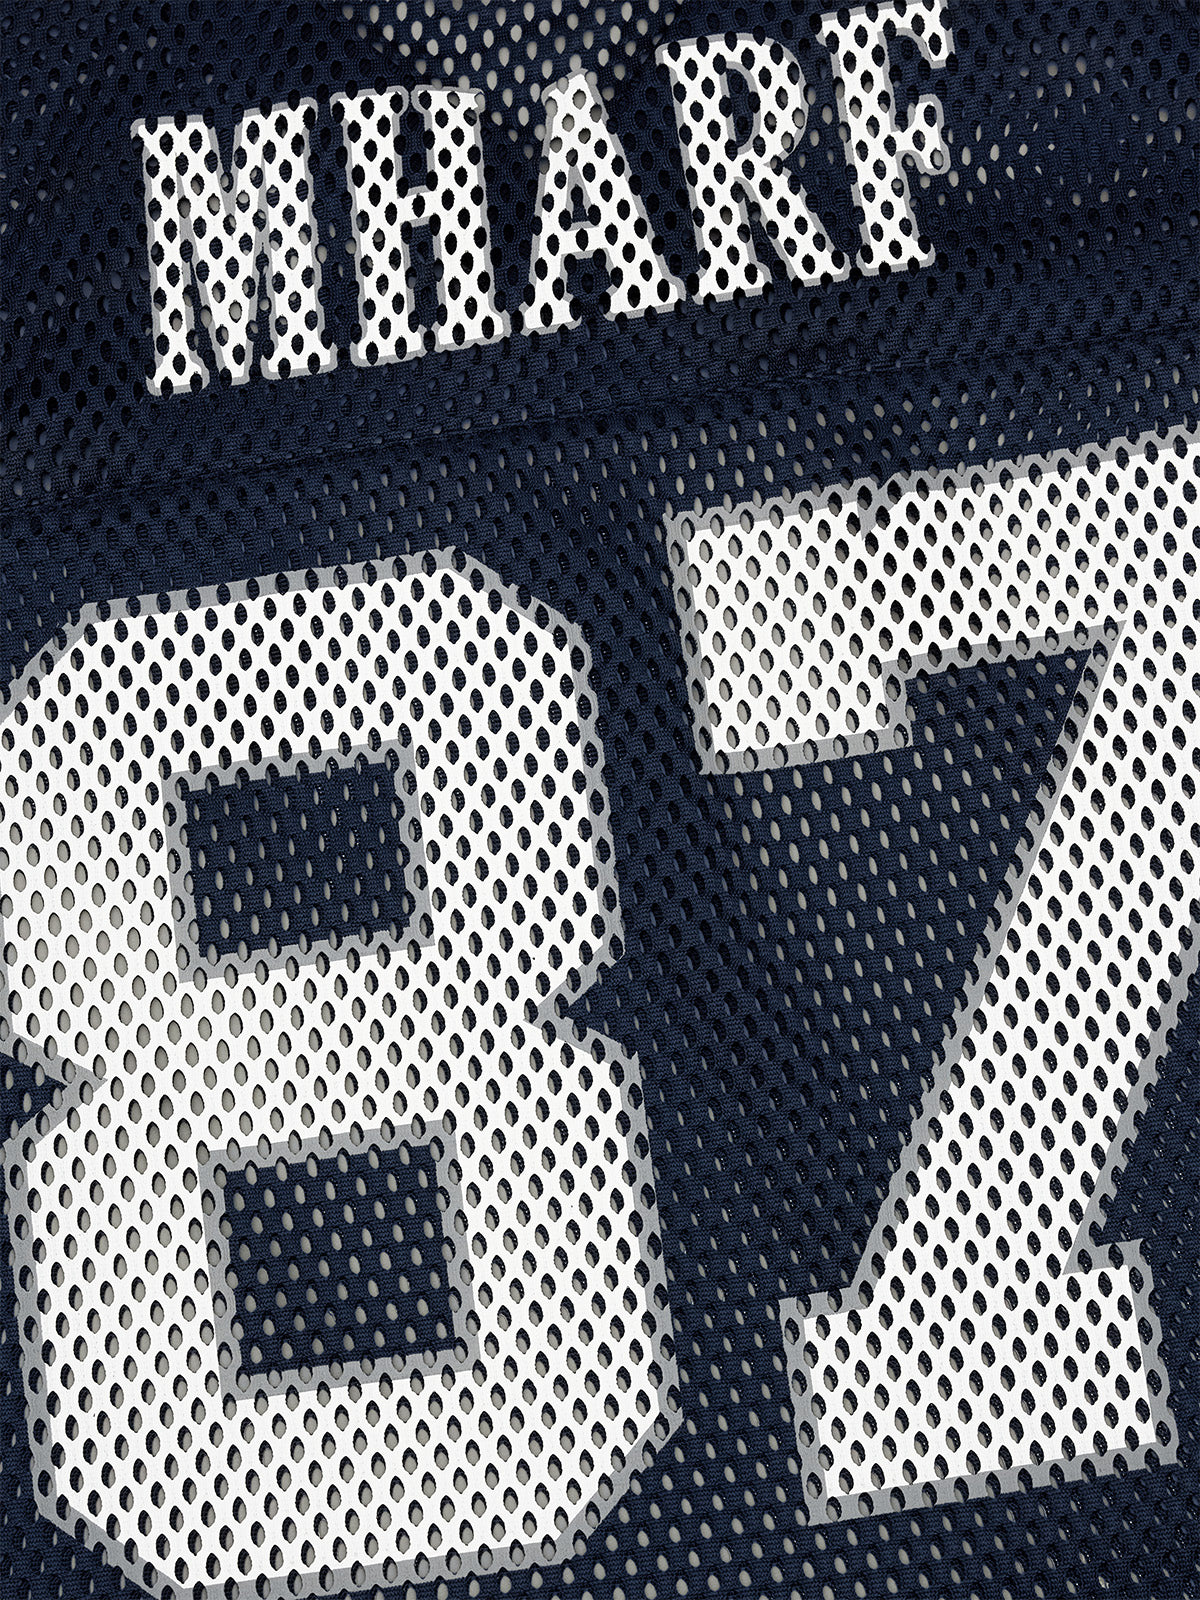 MHARF 87 Star Logo Vintage Mesh Uniform Hockey Jersey | Face 3 Face